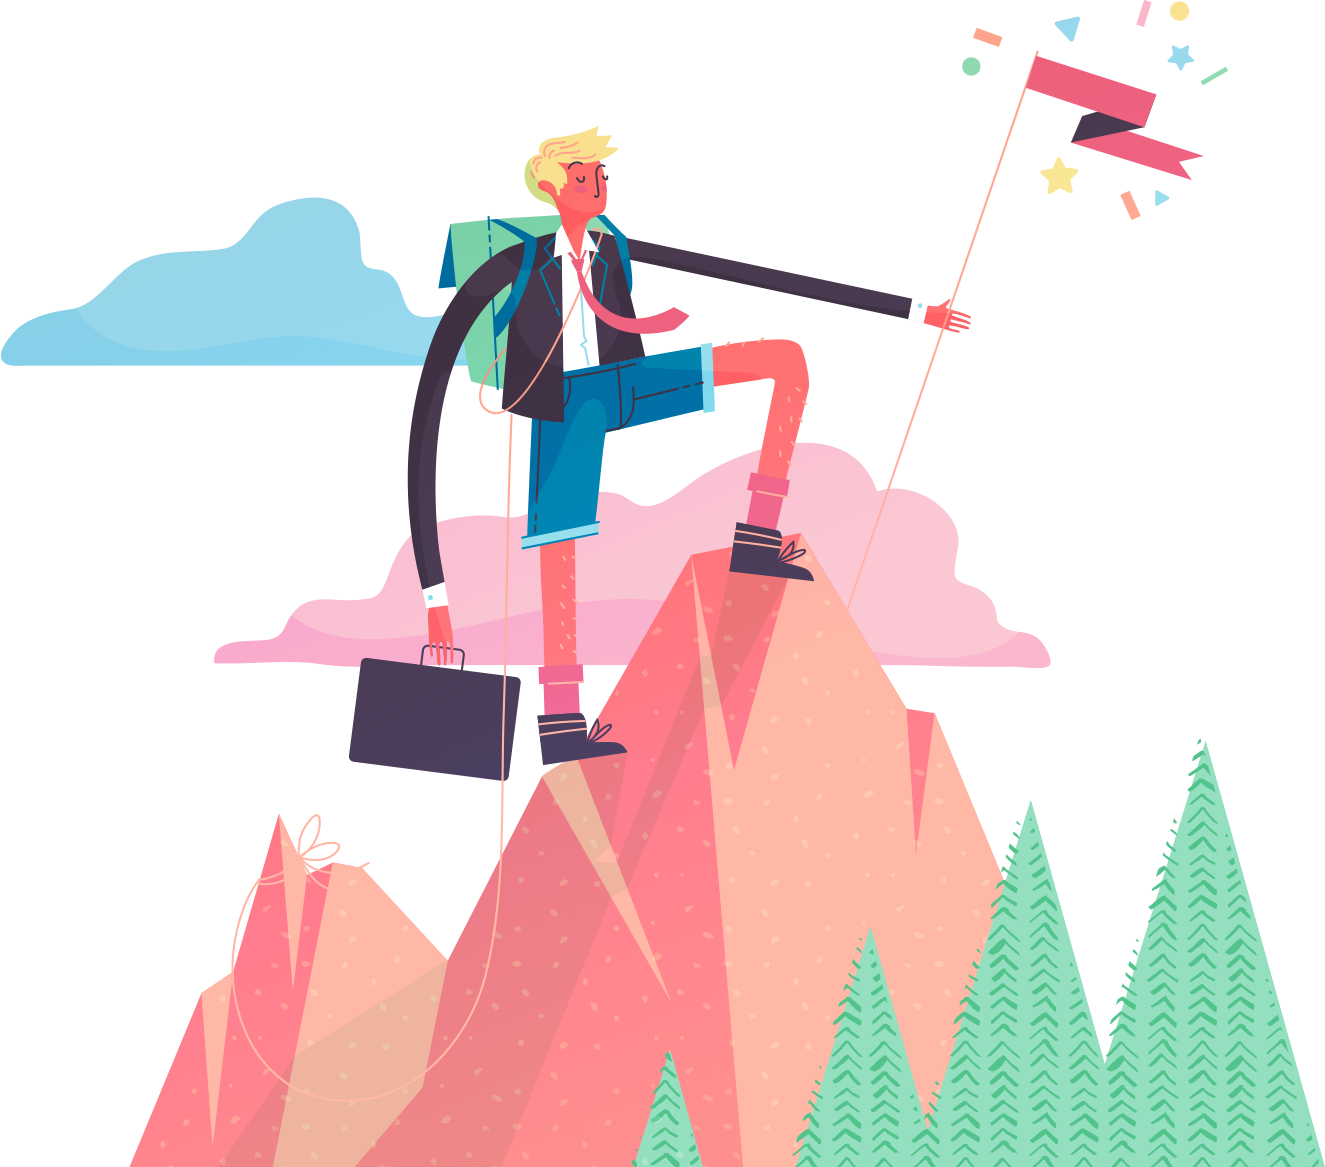 Man with a suitcase climbing a mountain